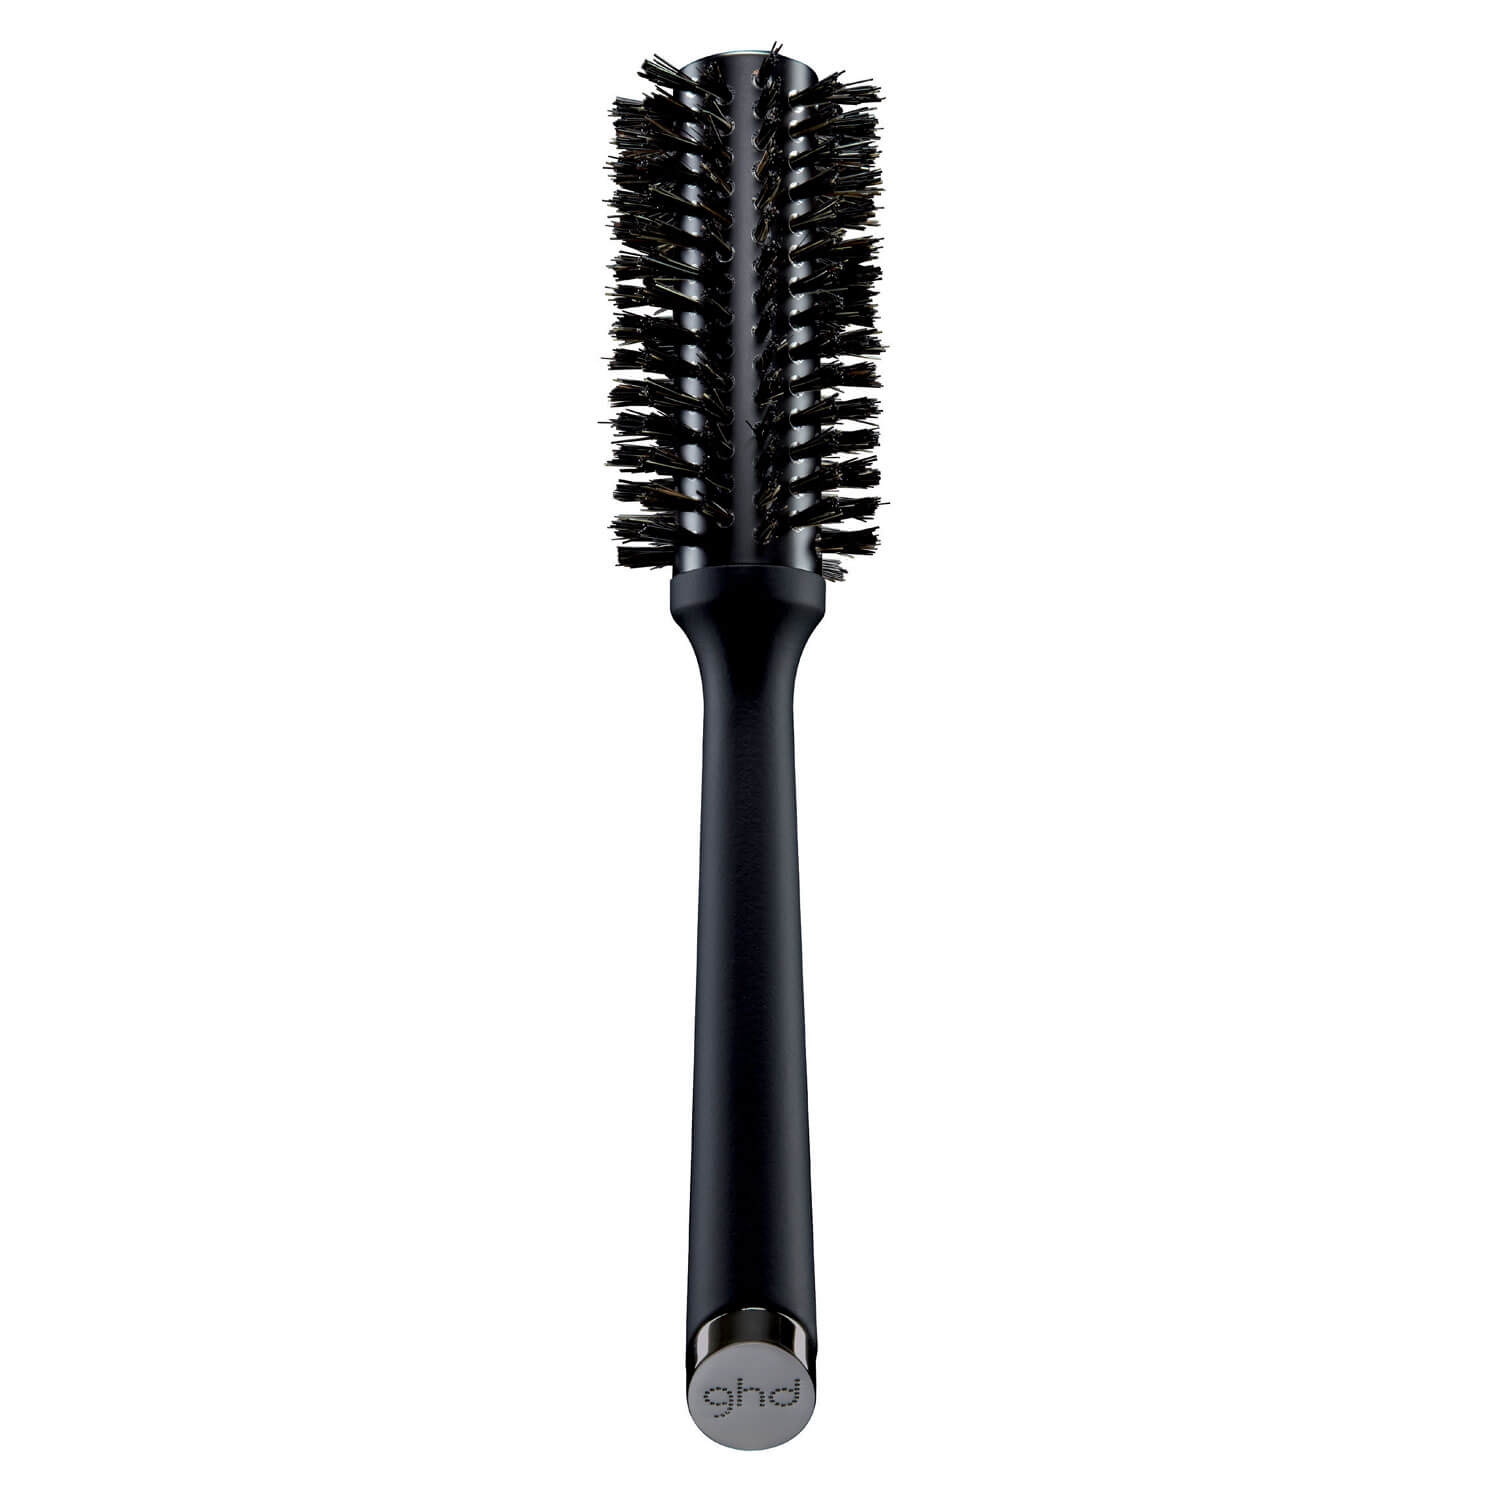 Produktbild von ghd Brushes - The Smoother Natural Bristle Brush 2